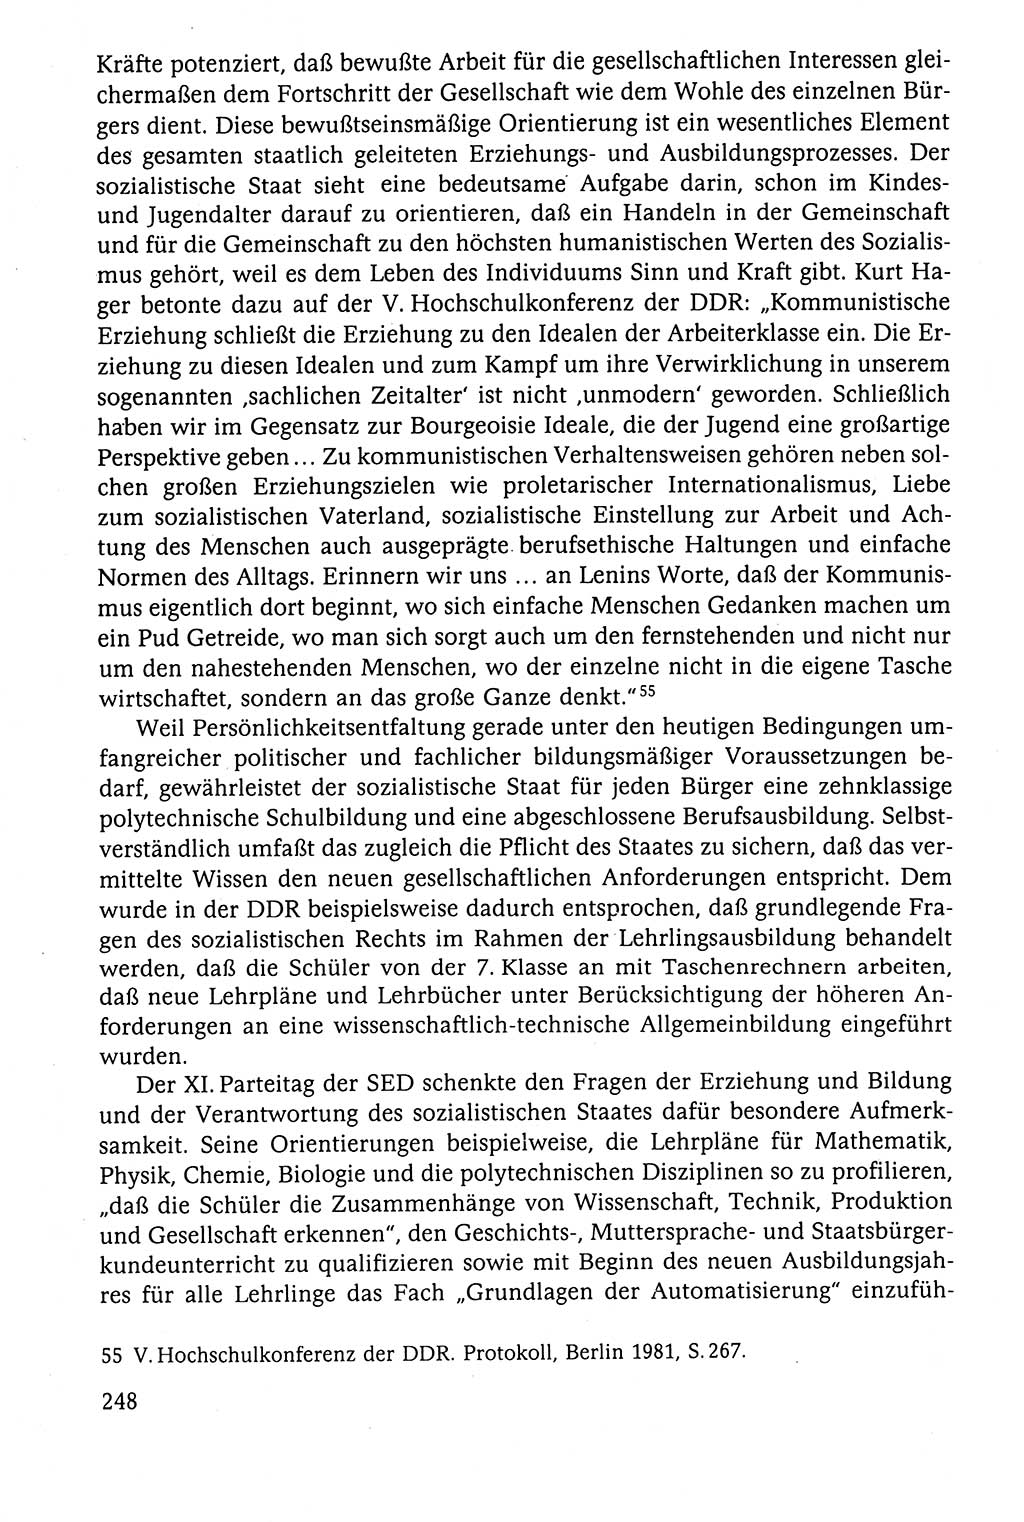 Der Staat im politischen System der DDR (Deutsche Demokratische Republik) 1986, Seite 248 (St. pol. Sys. DDR 1986, S. 248)